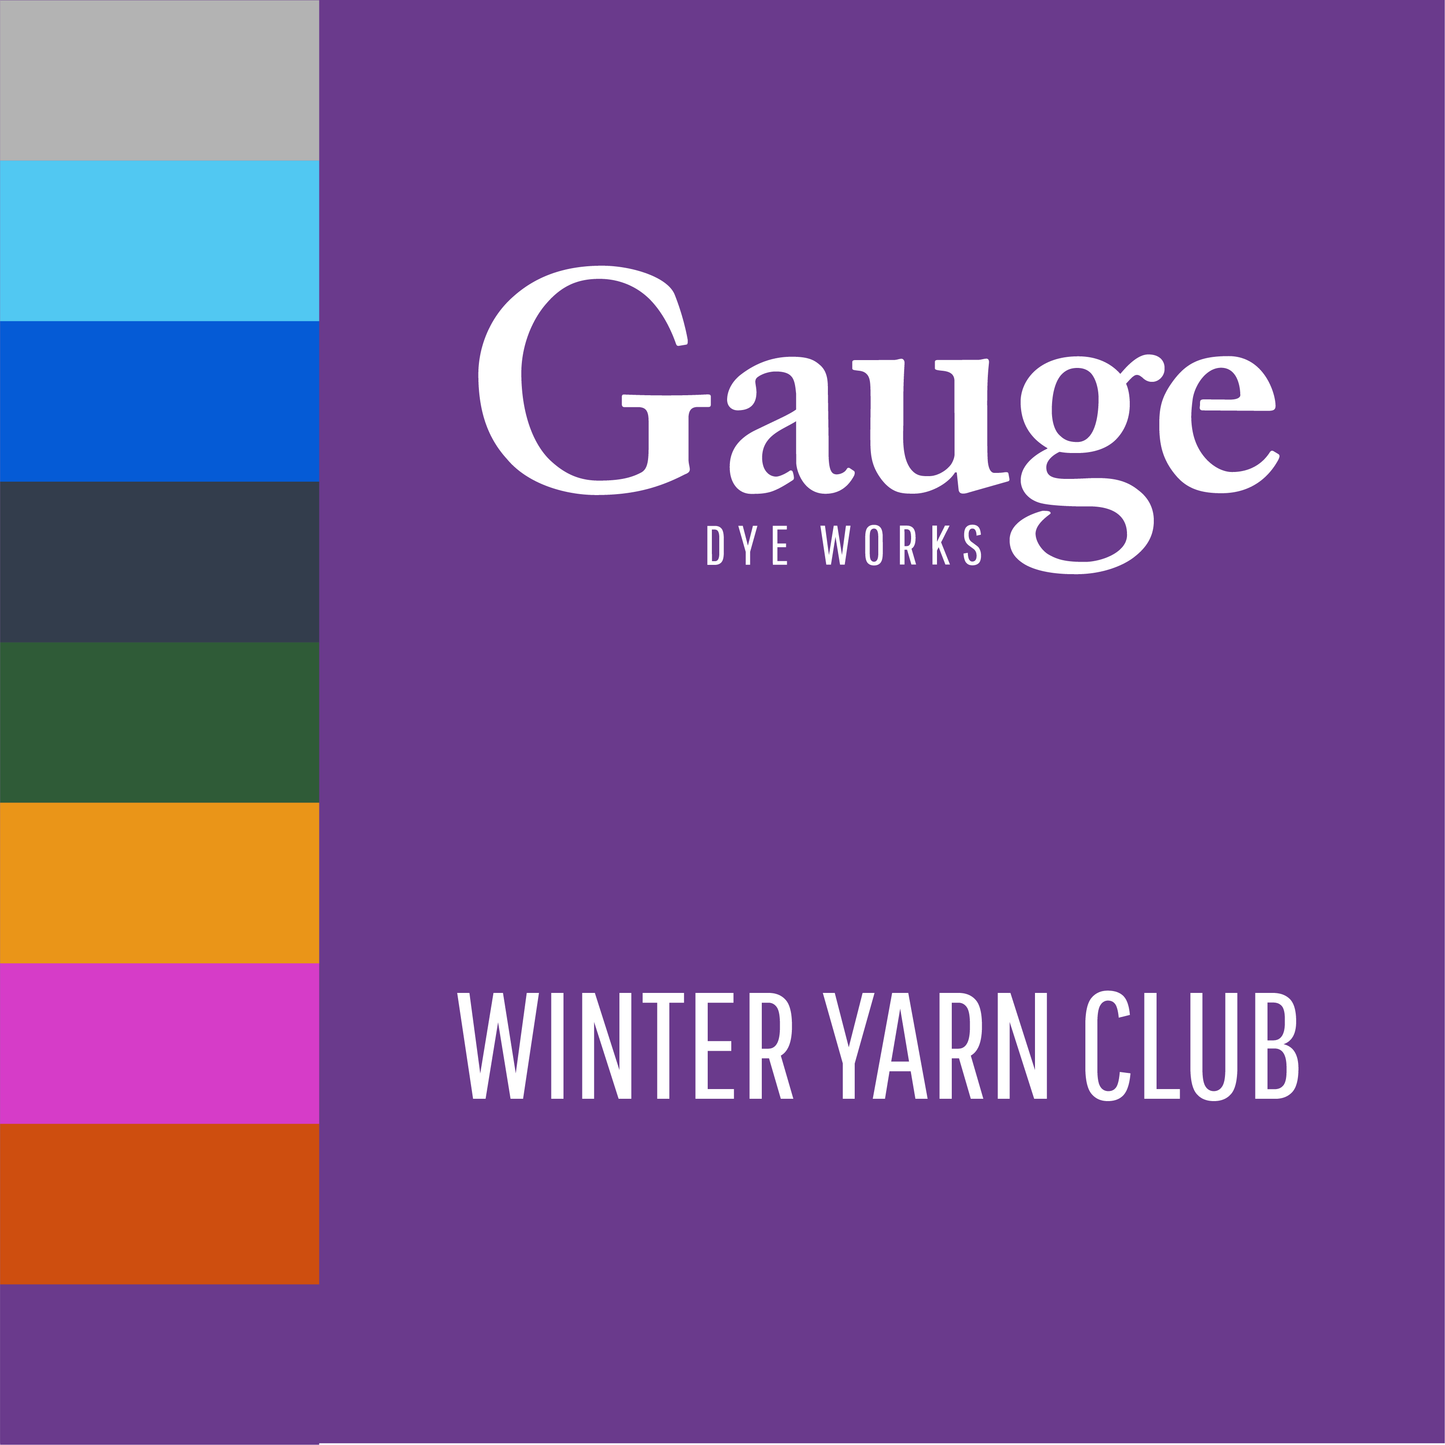 Yarn Club : Jan - May 2023